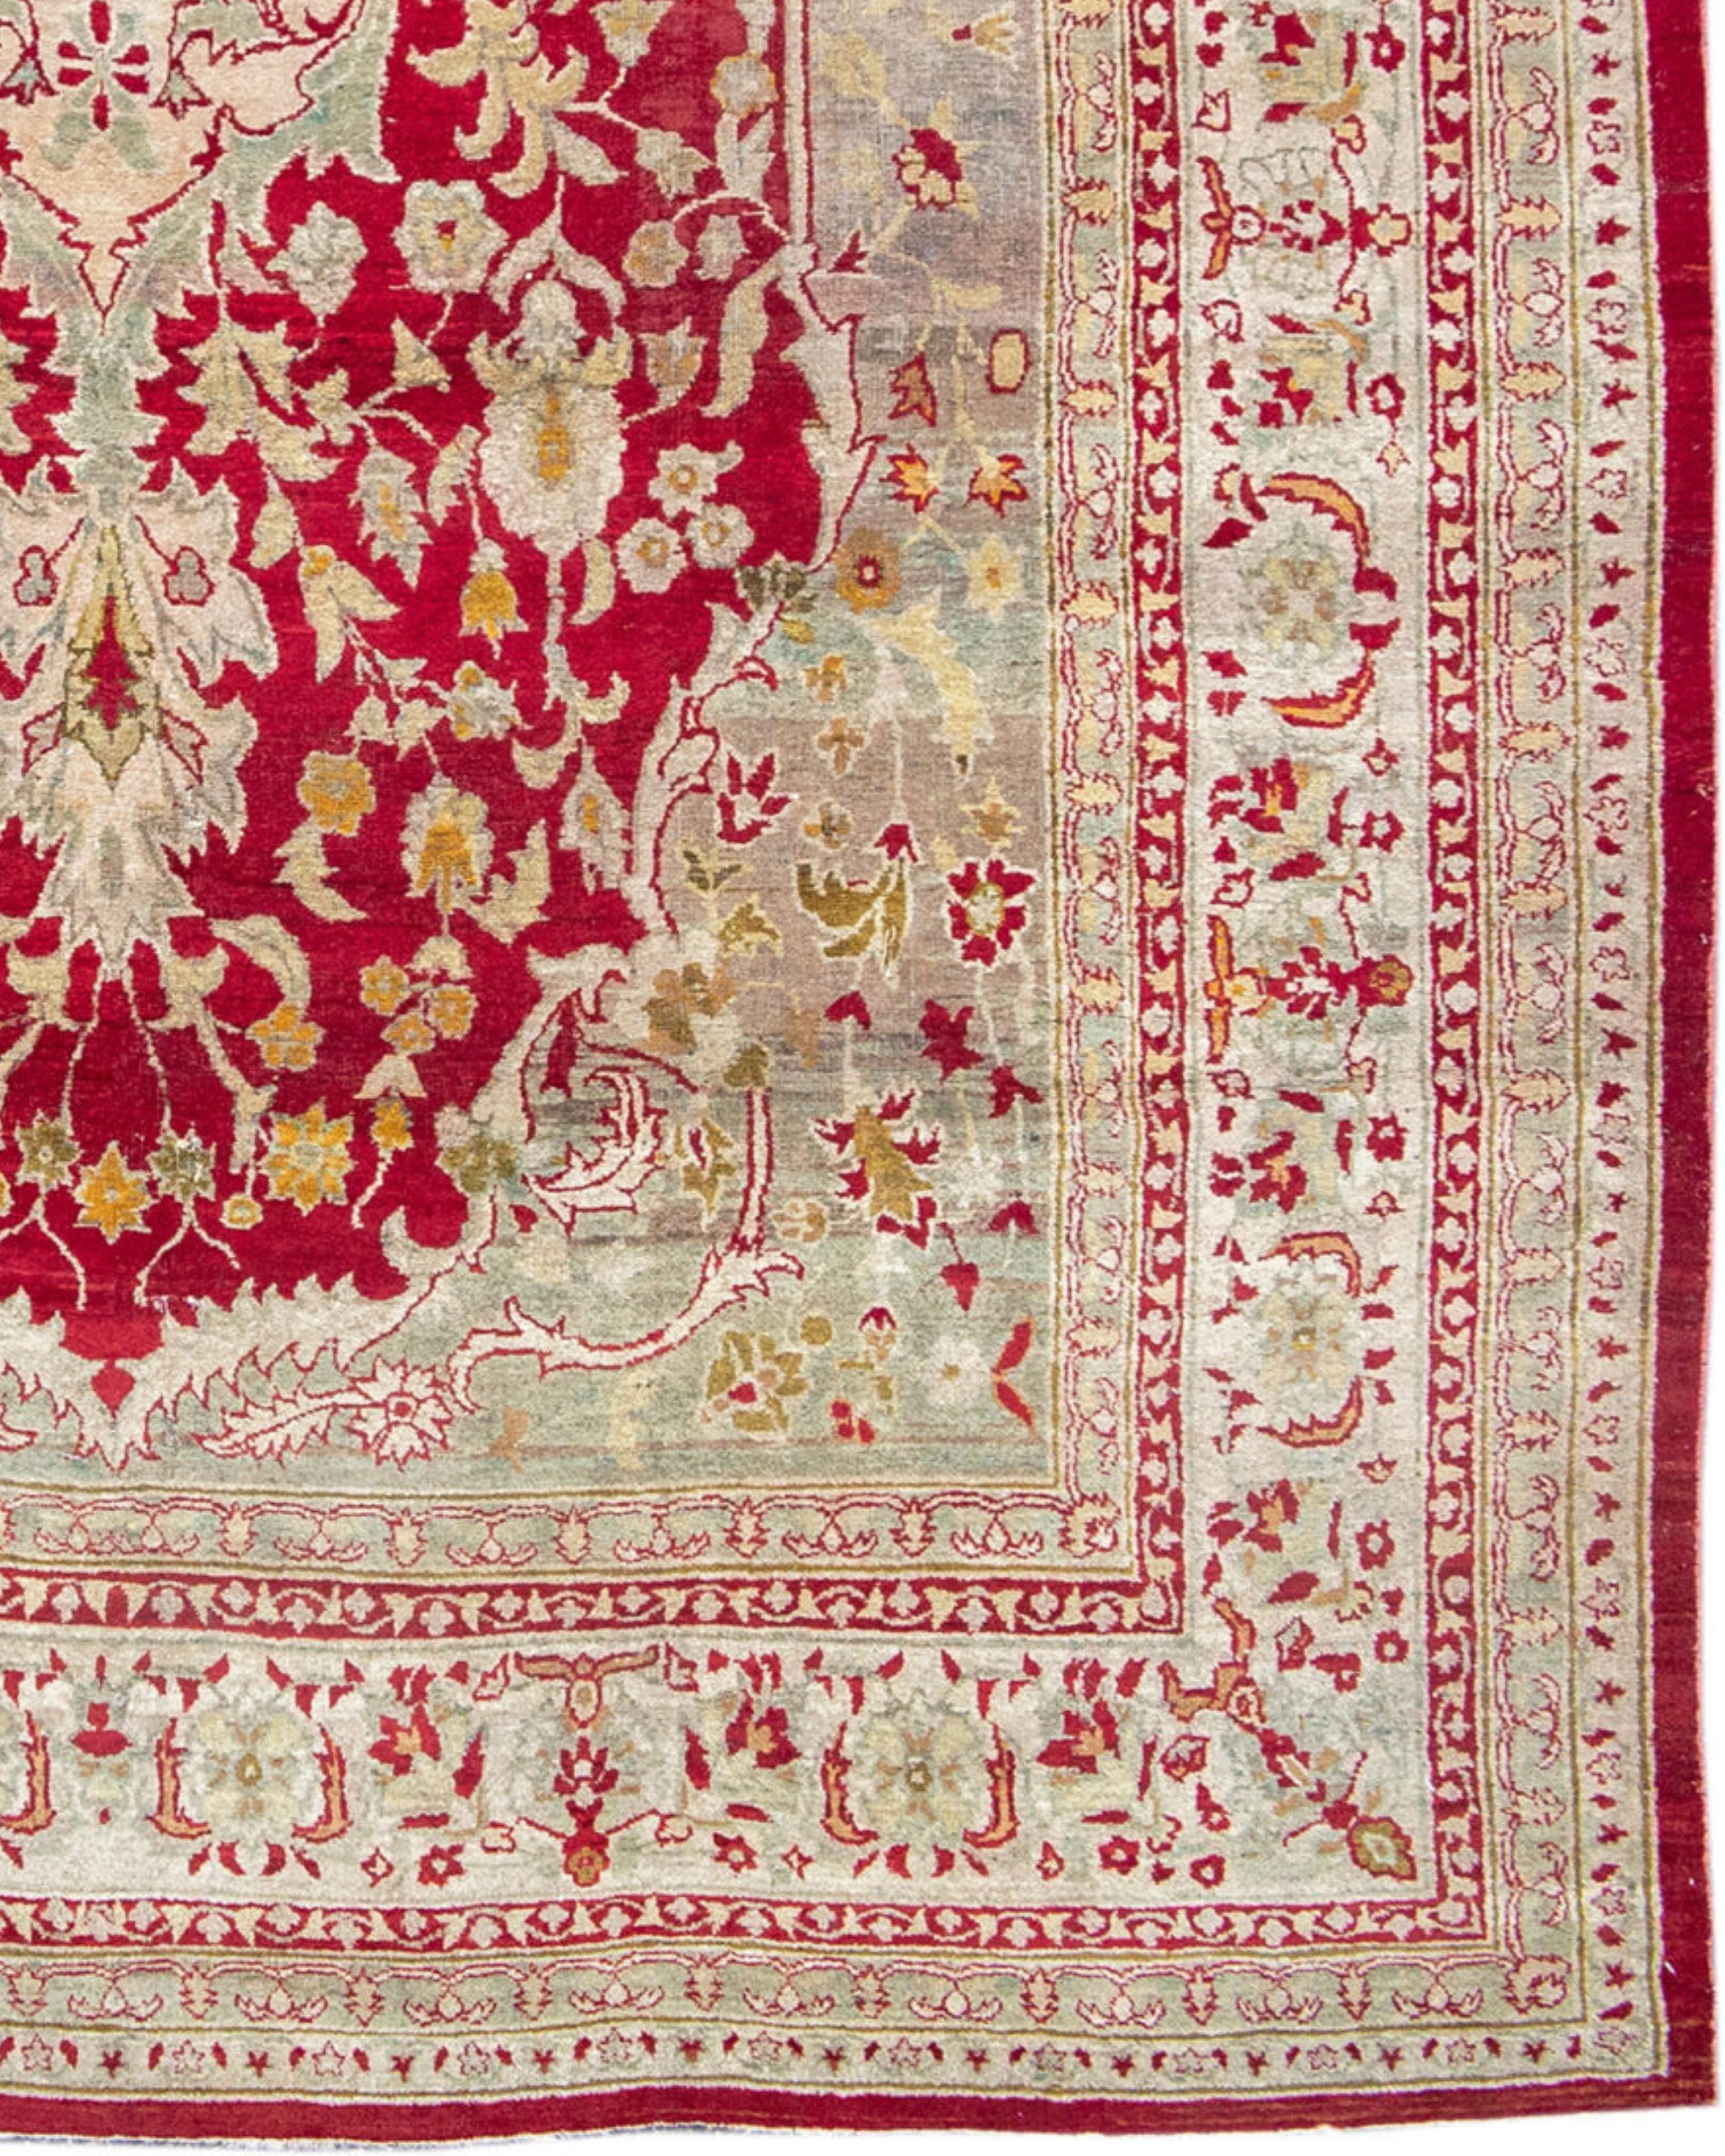 Antiker roter und goldener indischer Agra-Teppich aus dem späten 19. Jahrhundert

Zusätzliche Informationen:
Abmessungen: 8'9